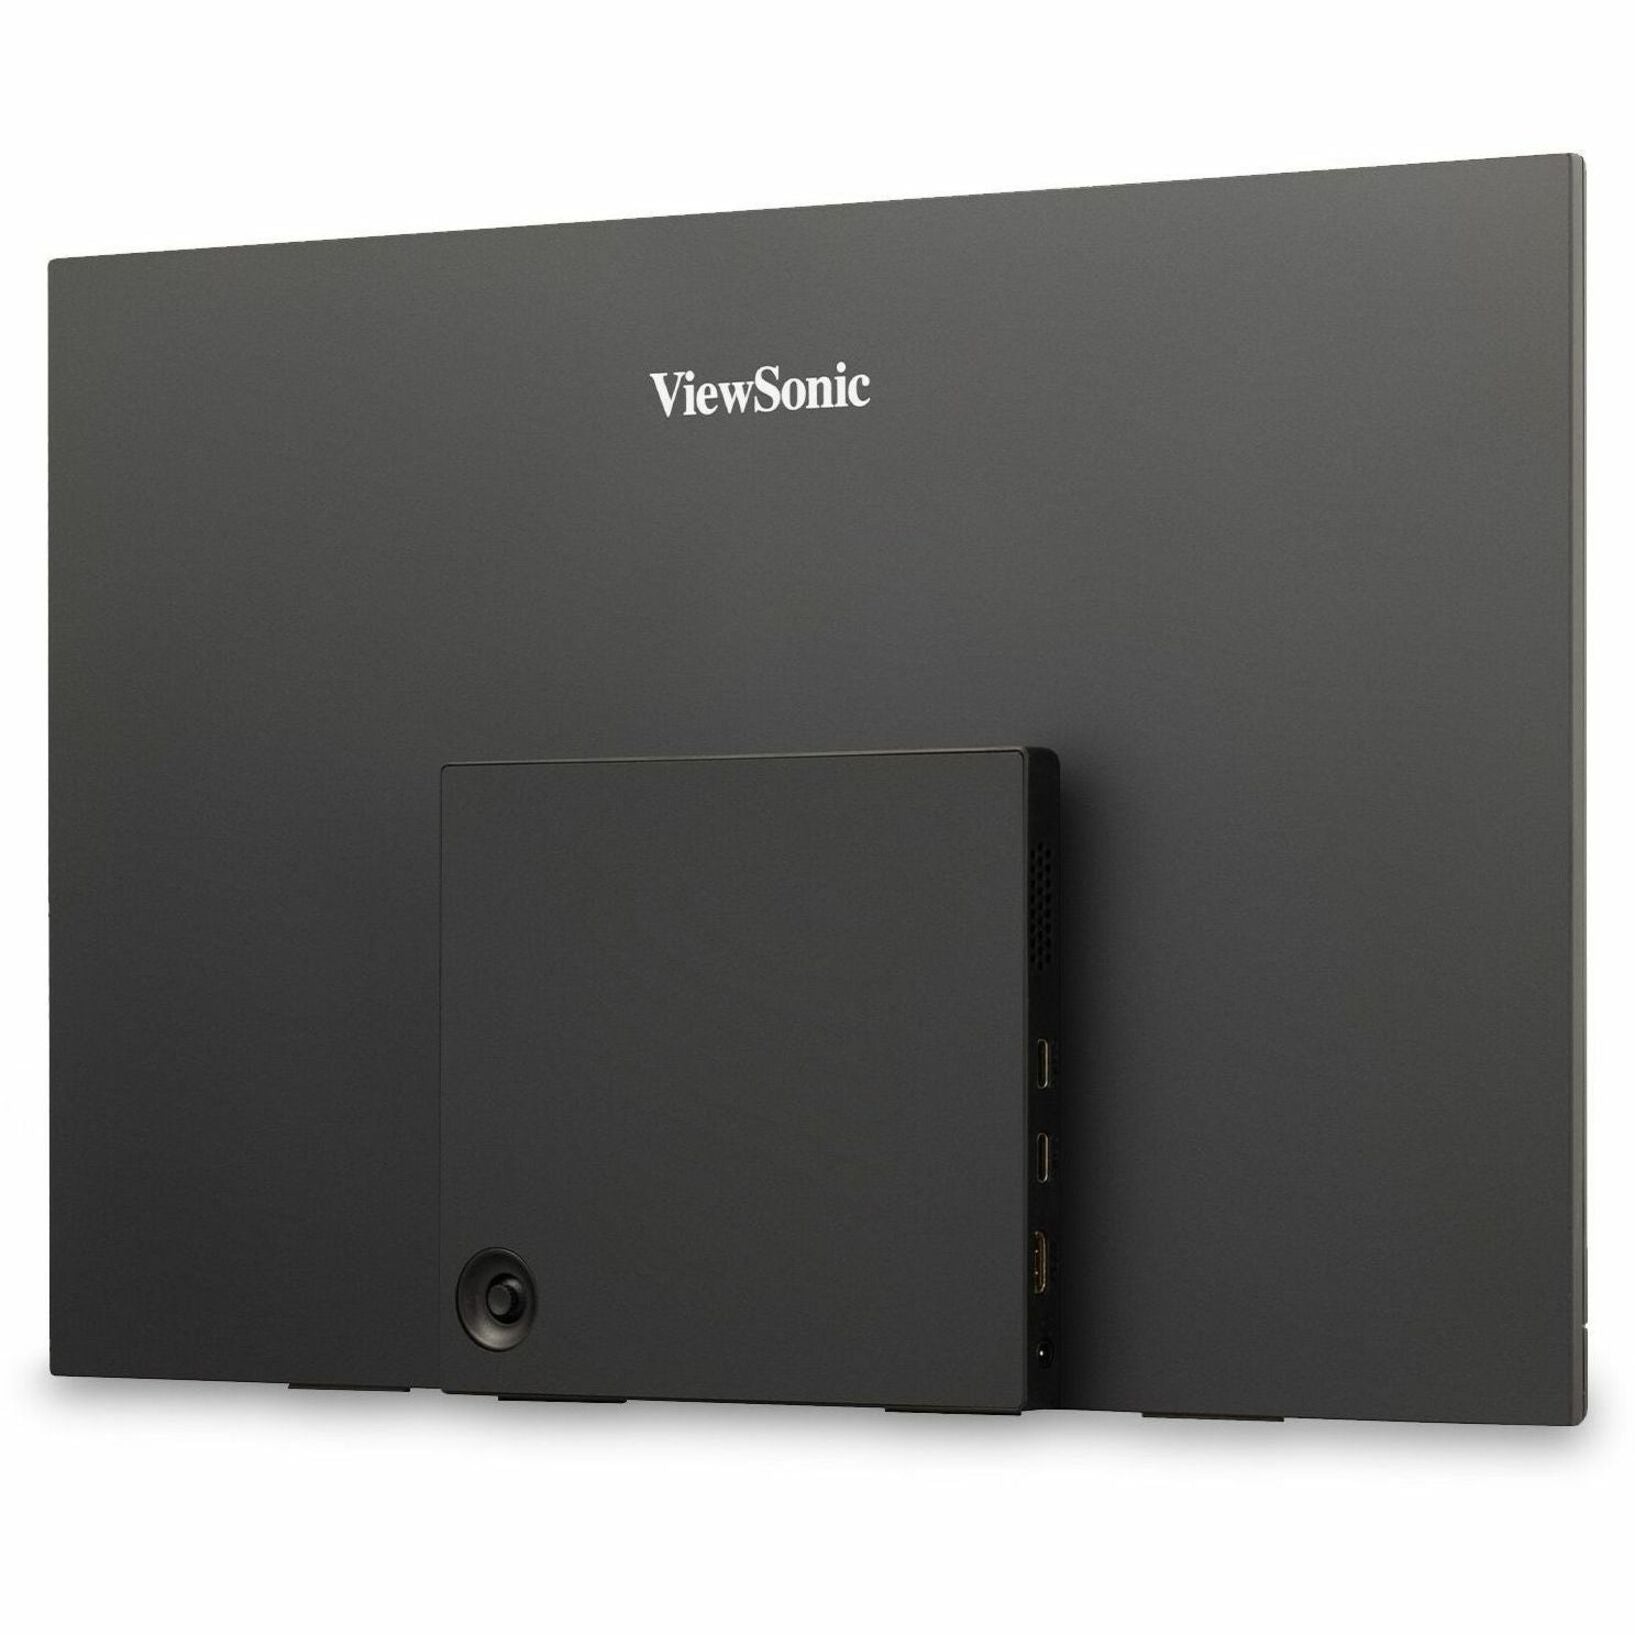 ViewSonic VX1655-4K 游戏 LED 显示器 15.6" 4K UHD 可携式显示器，带 60W USB C 和迷你 HDMI  视达品牌。将视达品牌翻译成英文。